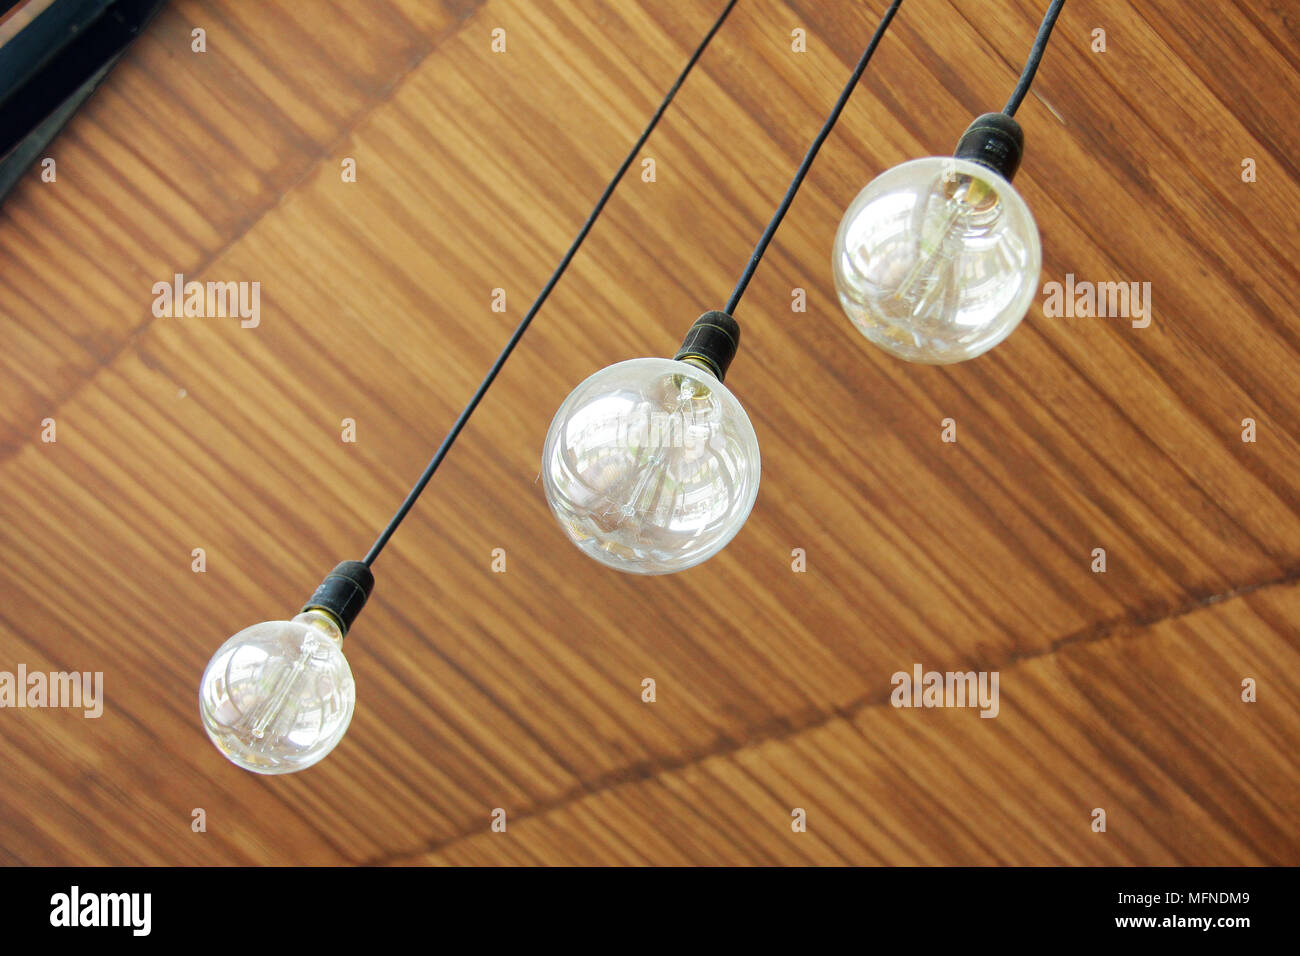 Trois ampoules rétro qui pendait au plafond en bois dans la région de coffee shop Banque D'Images